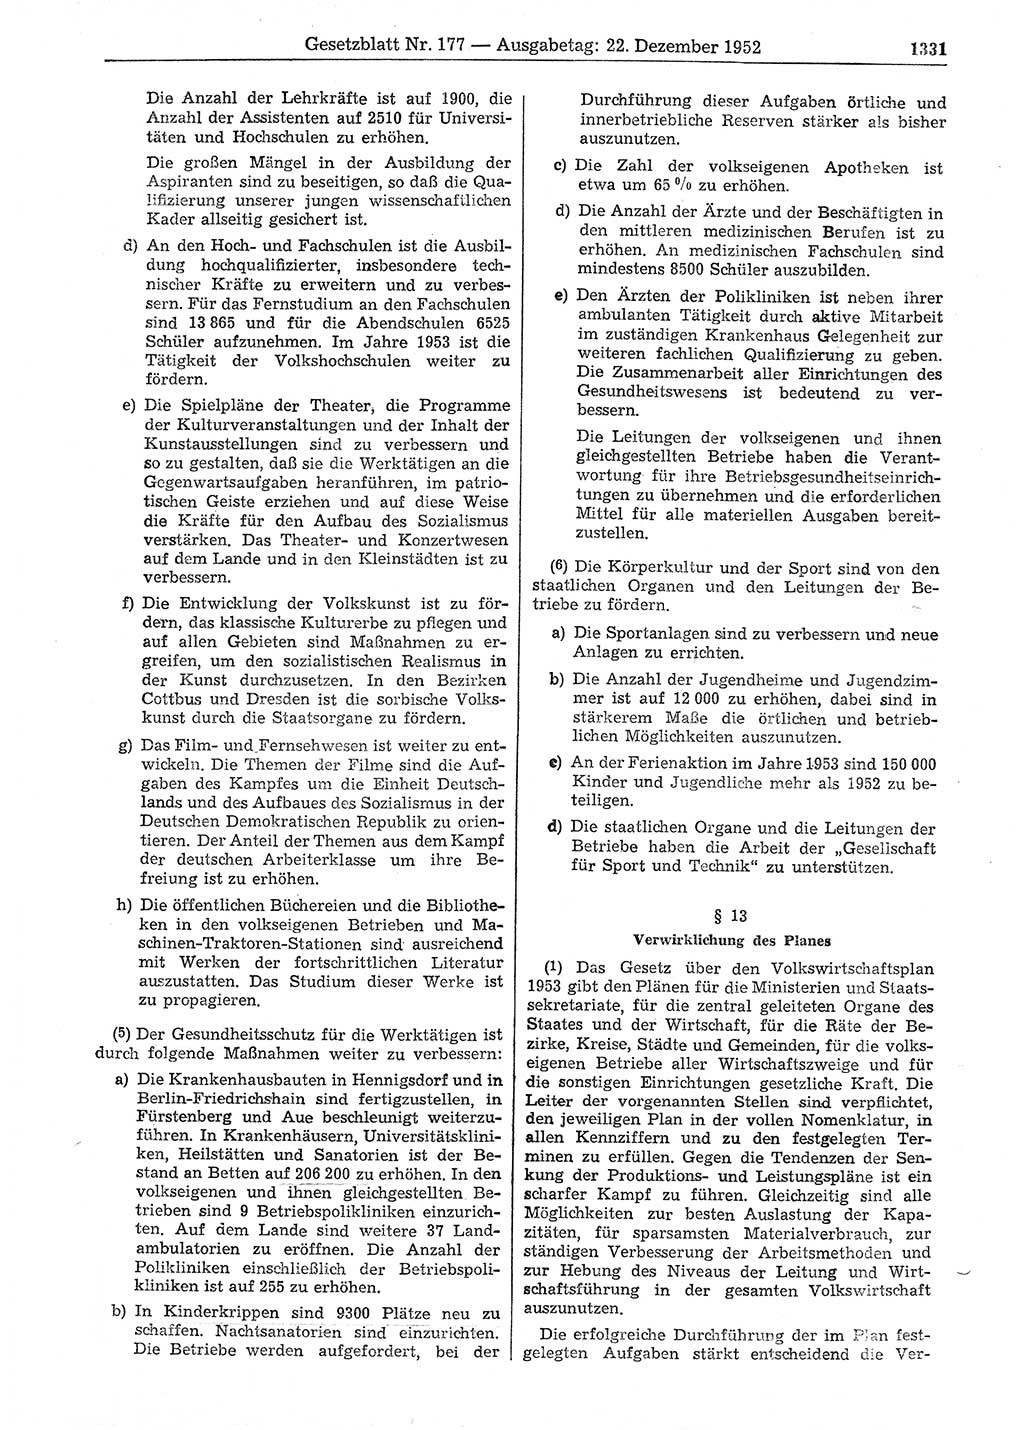 Gesetzblatt (GBl.) der Deutschen Demokratischen Republik (DDR) 1952, Seite 1331 (GBl. DDR 1952, S. 1331)